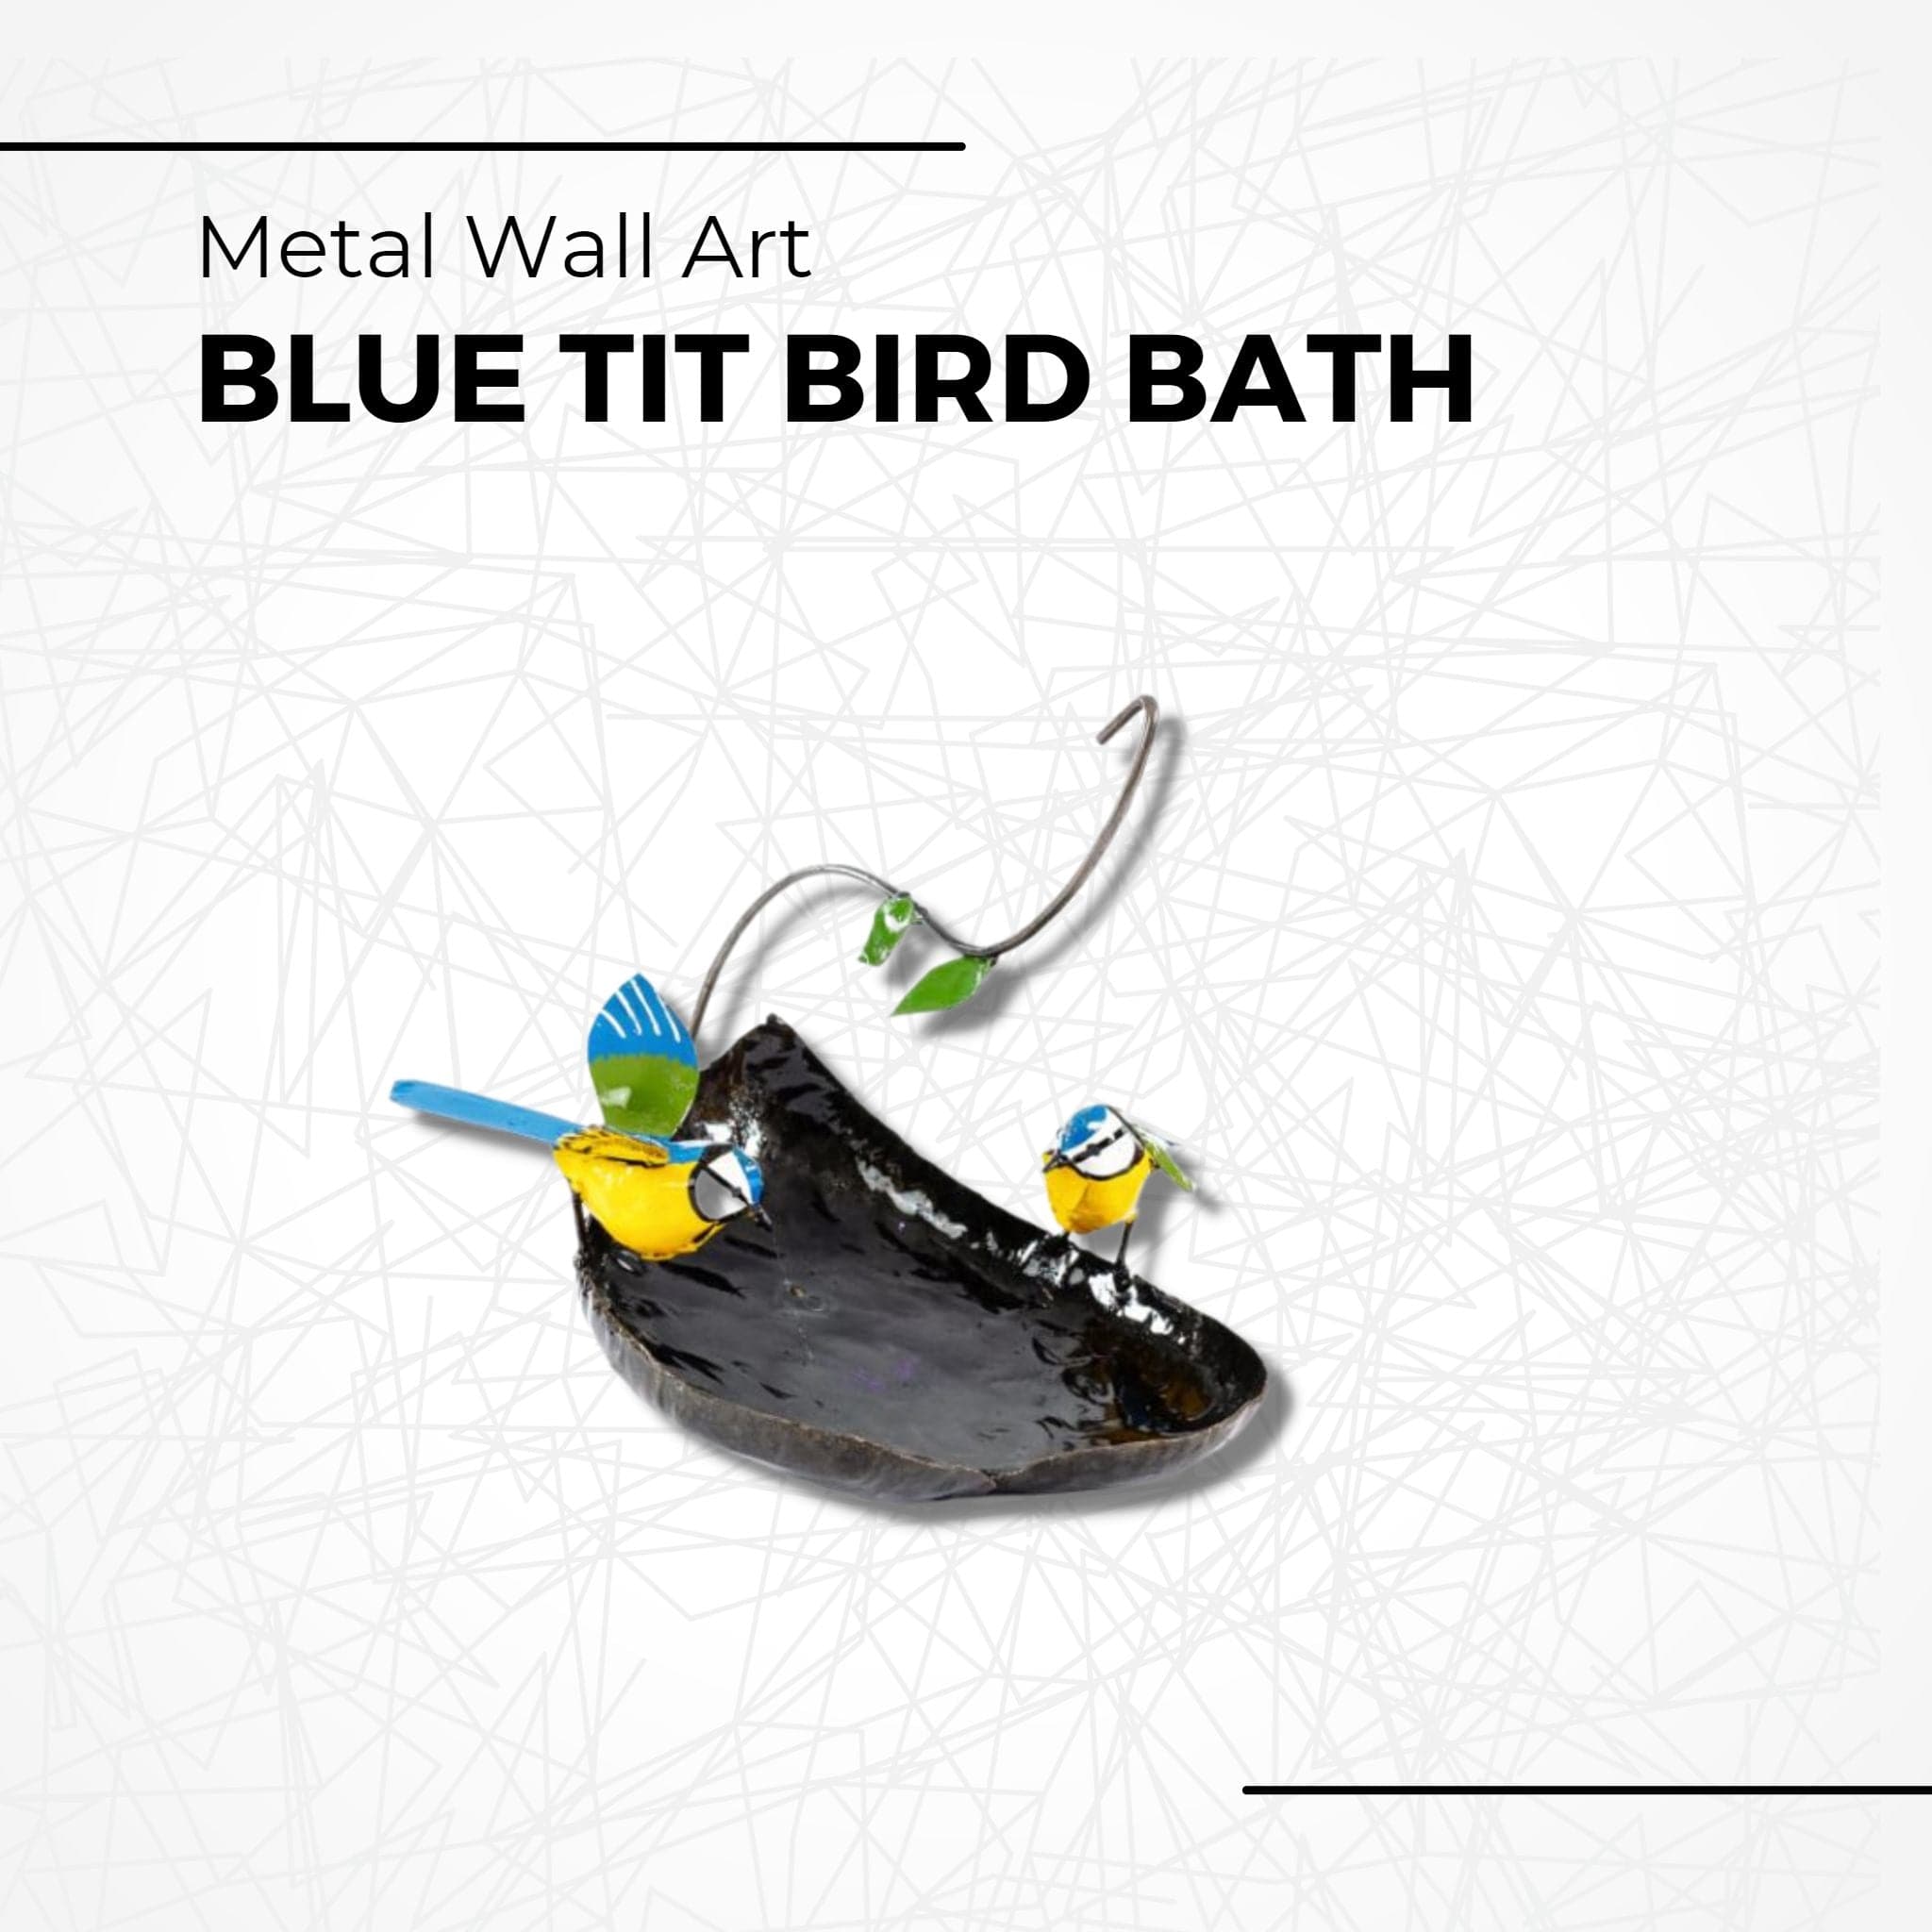 Blue Tit Bird Bath - Pangea Sculptures